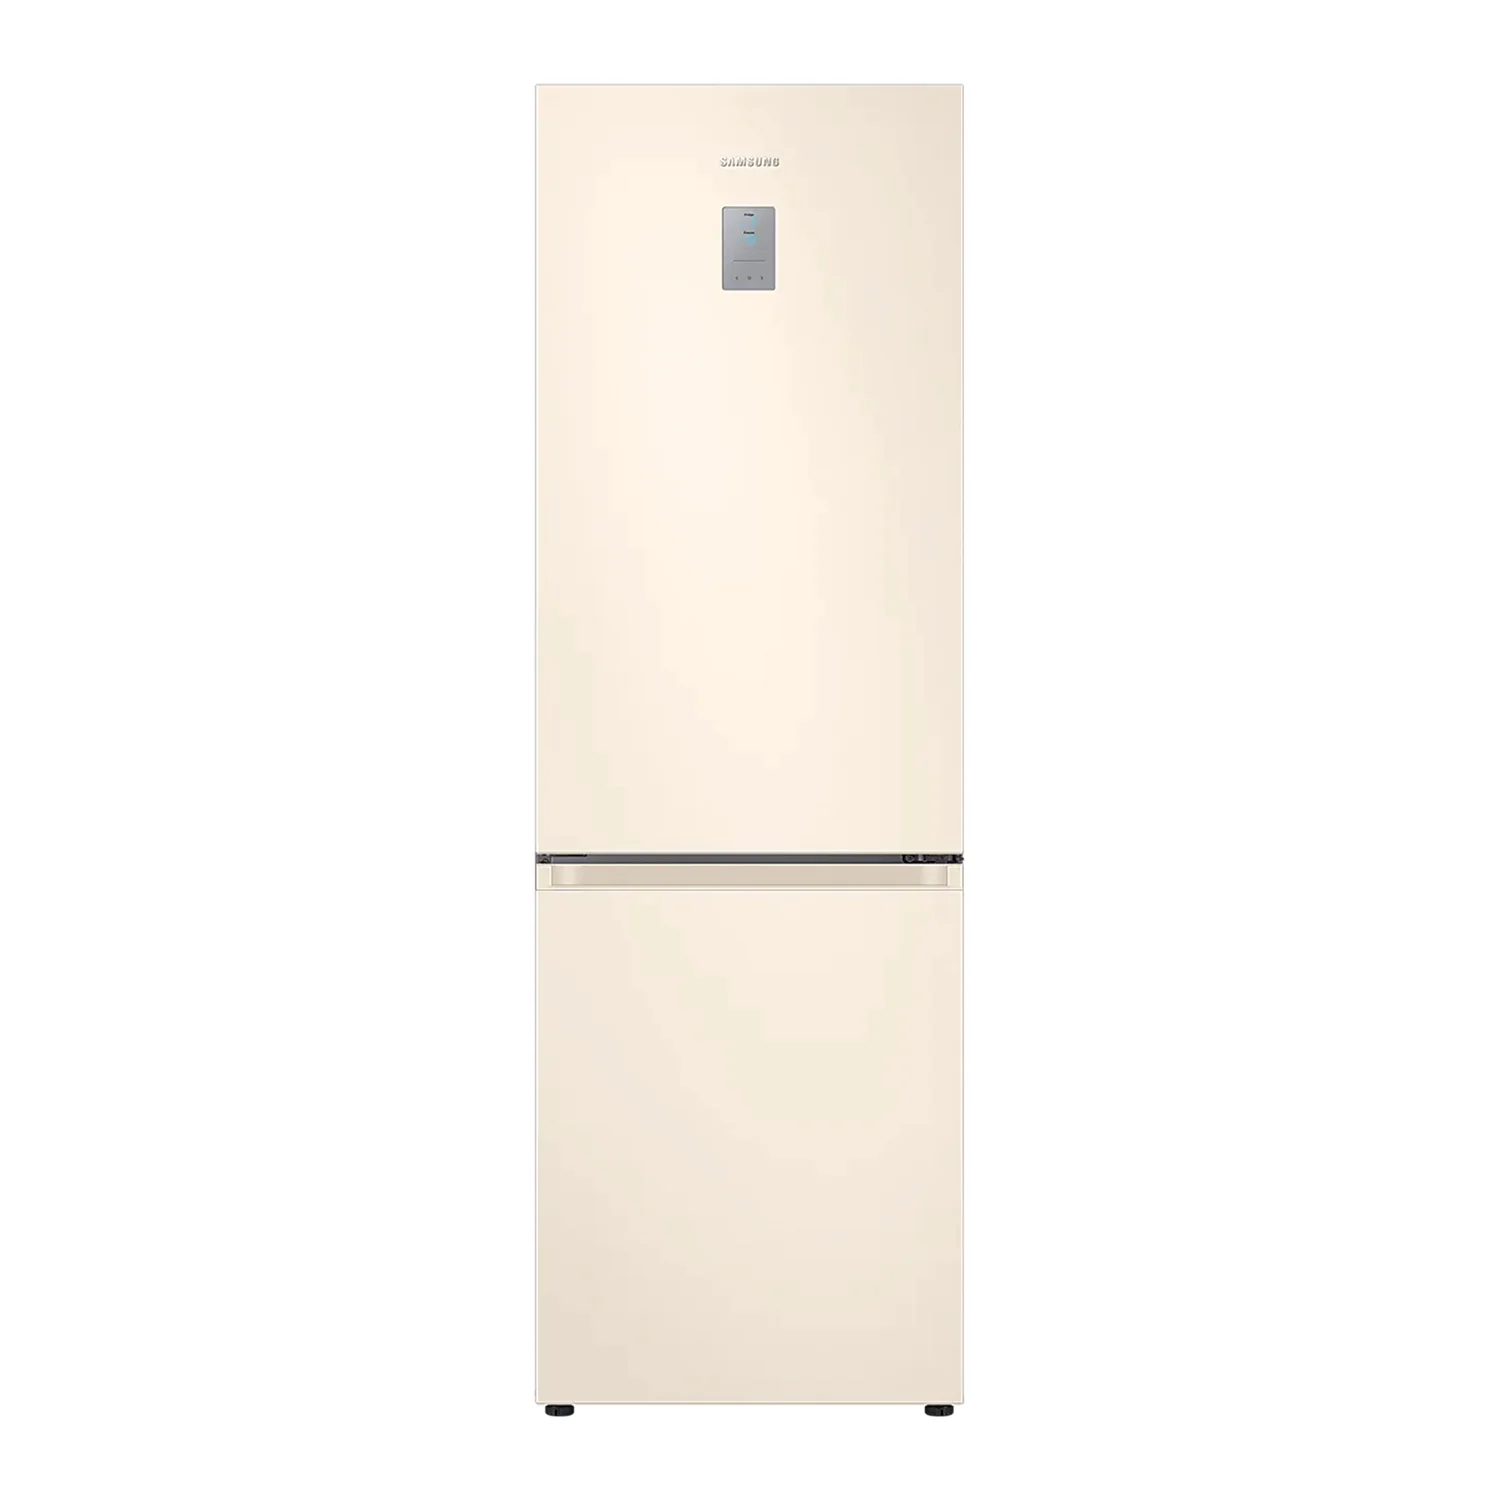 Samostojeći frižider sa zamrzivačem Samsung, krem boje